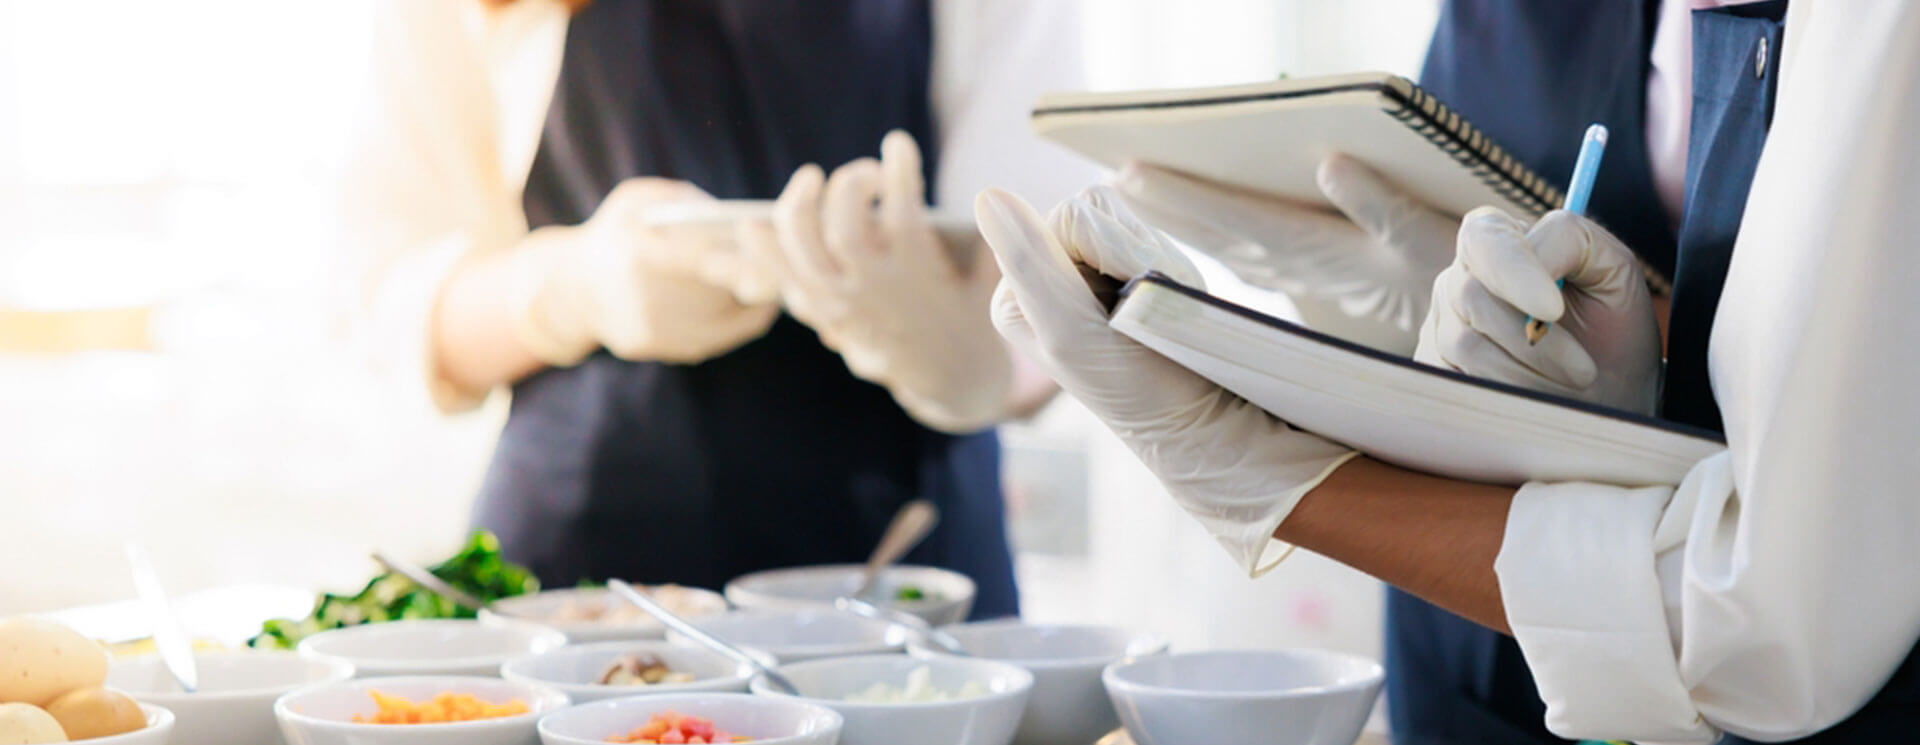 Hygieneplan für die Gastronomie: Wie man ein sauberes und sicheres Restaurant betreibt